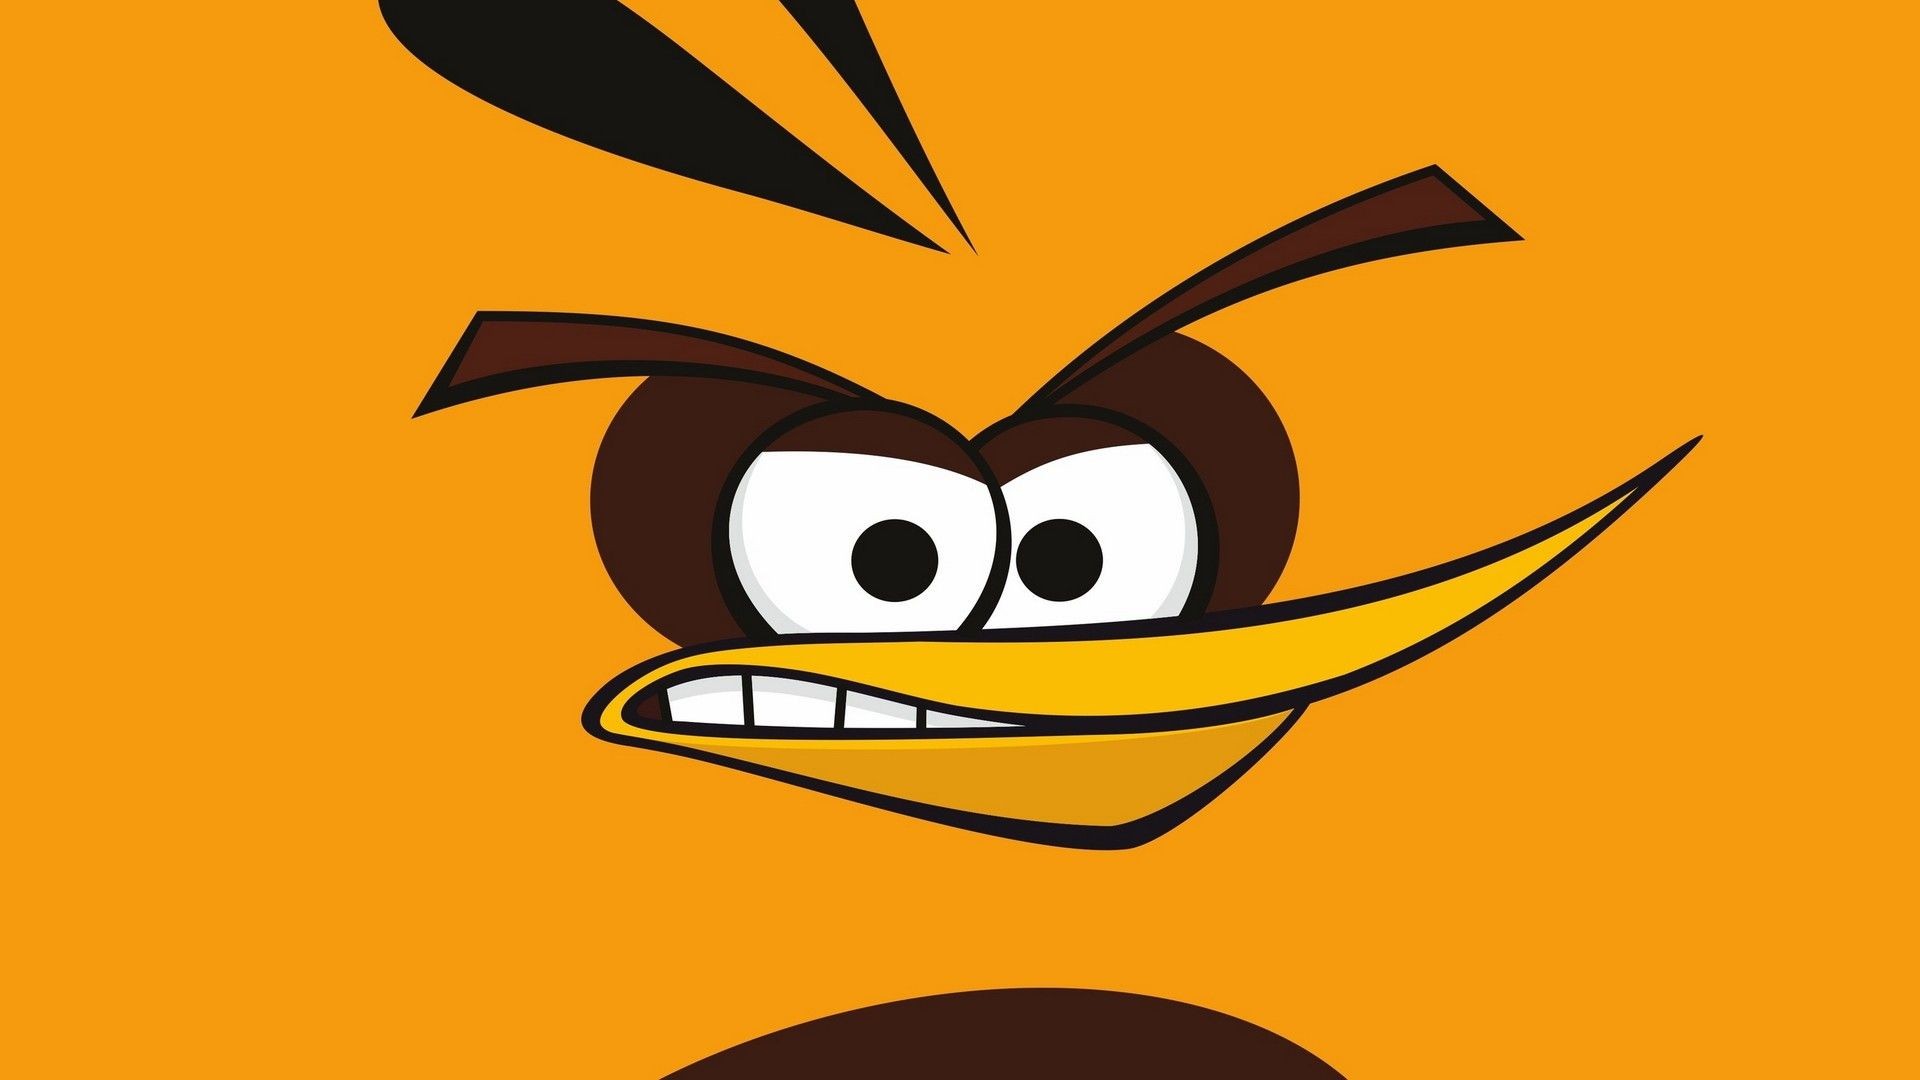 angry bird orange